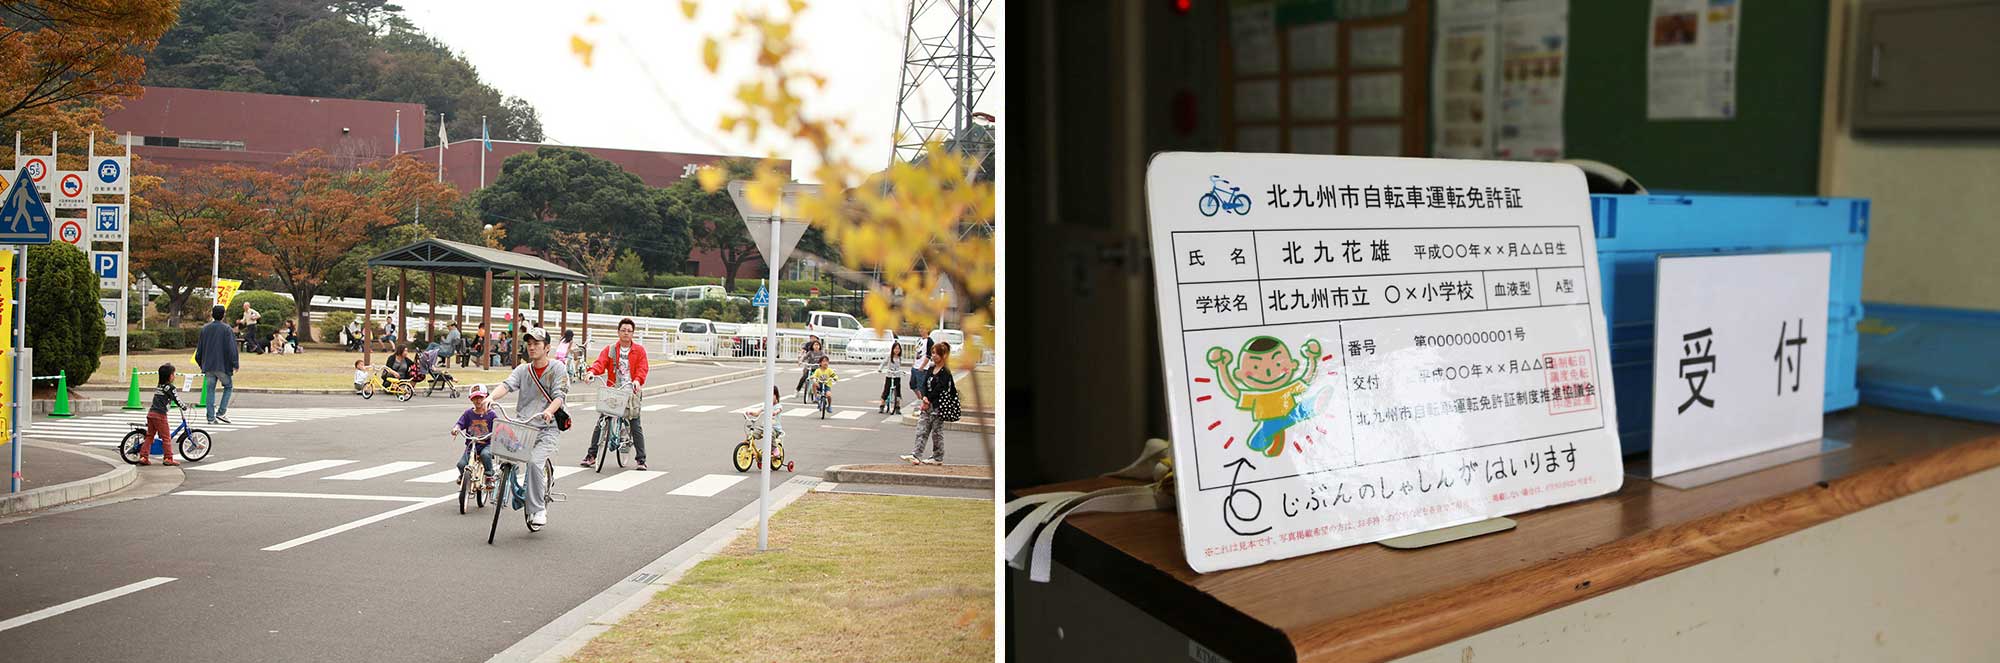 北九州交通公園で自転車運転免許講習会の風景